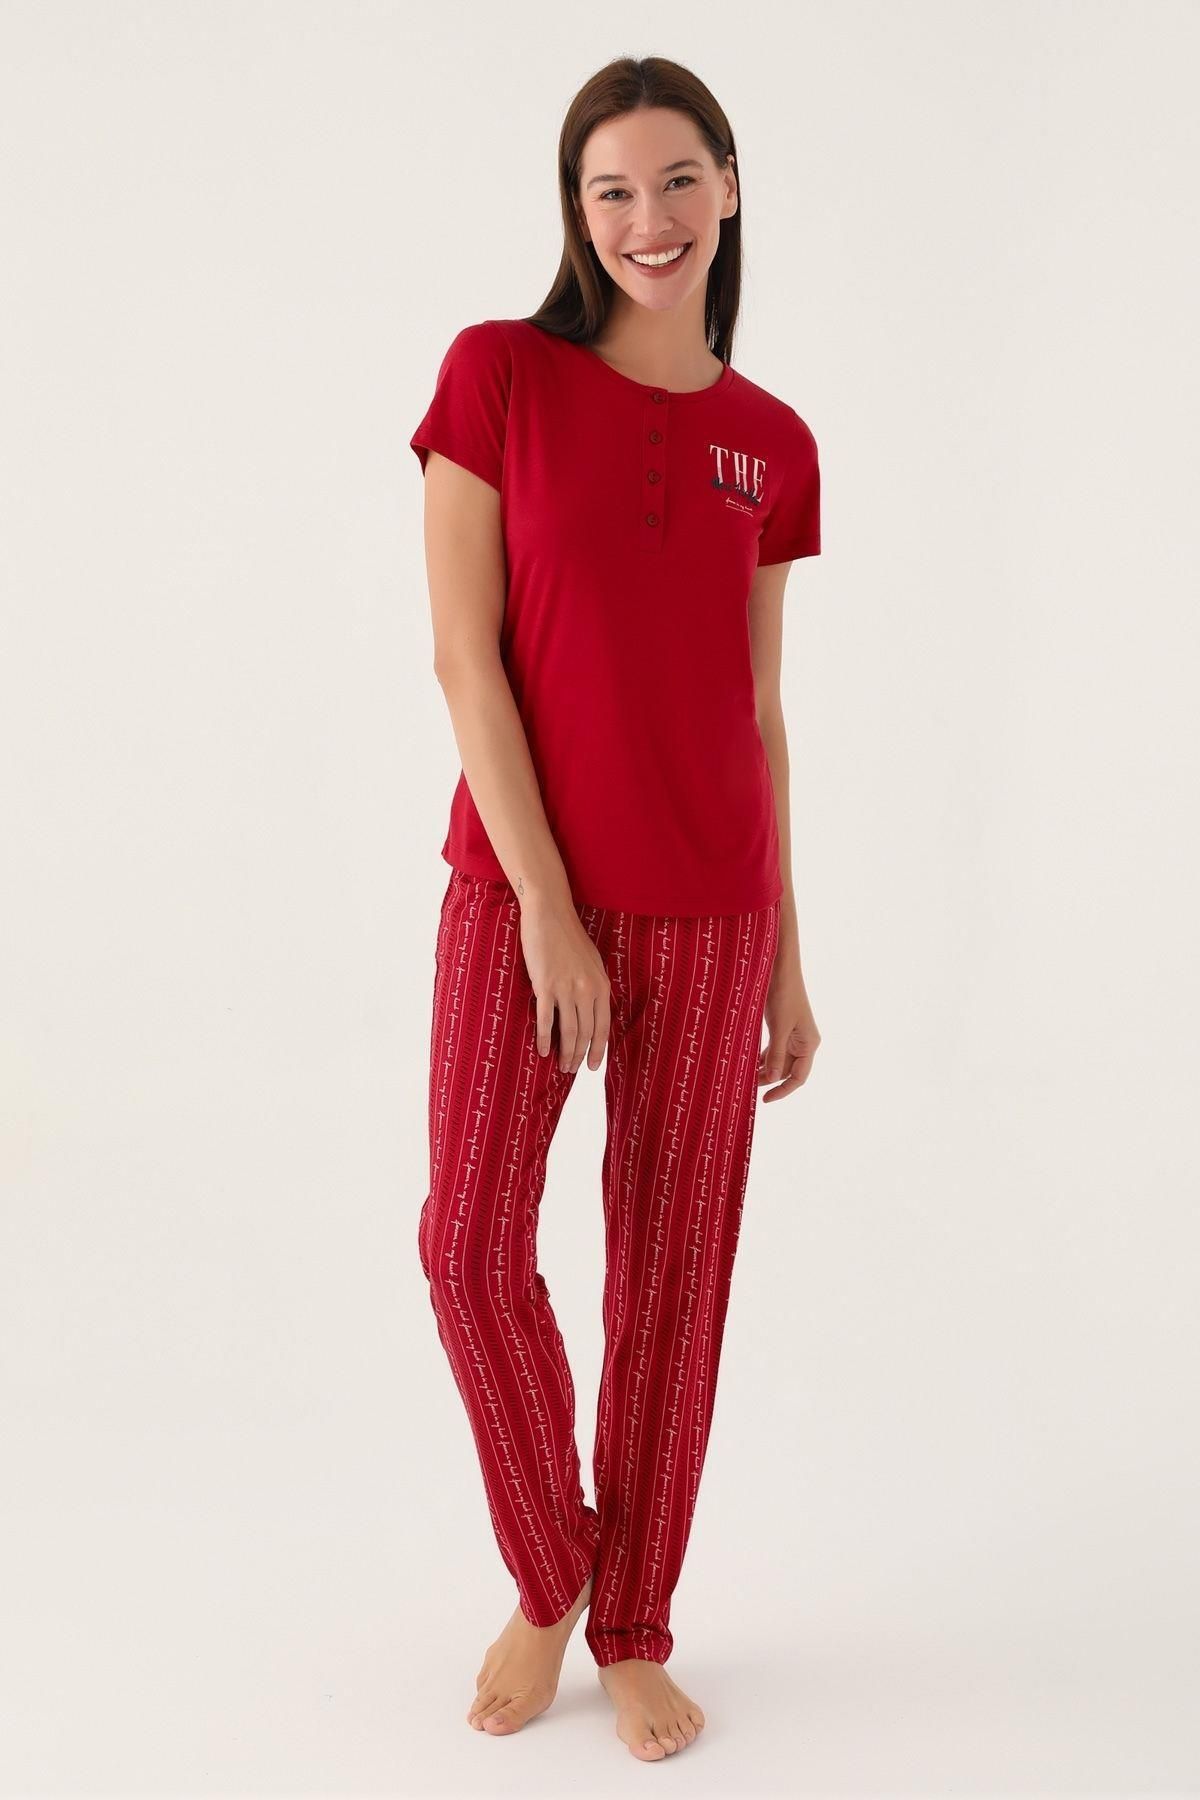 Arnetta Kadın Kısa Kol Bordo Pijama Takımı 2908